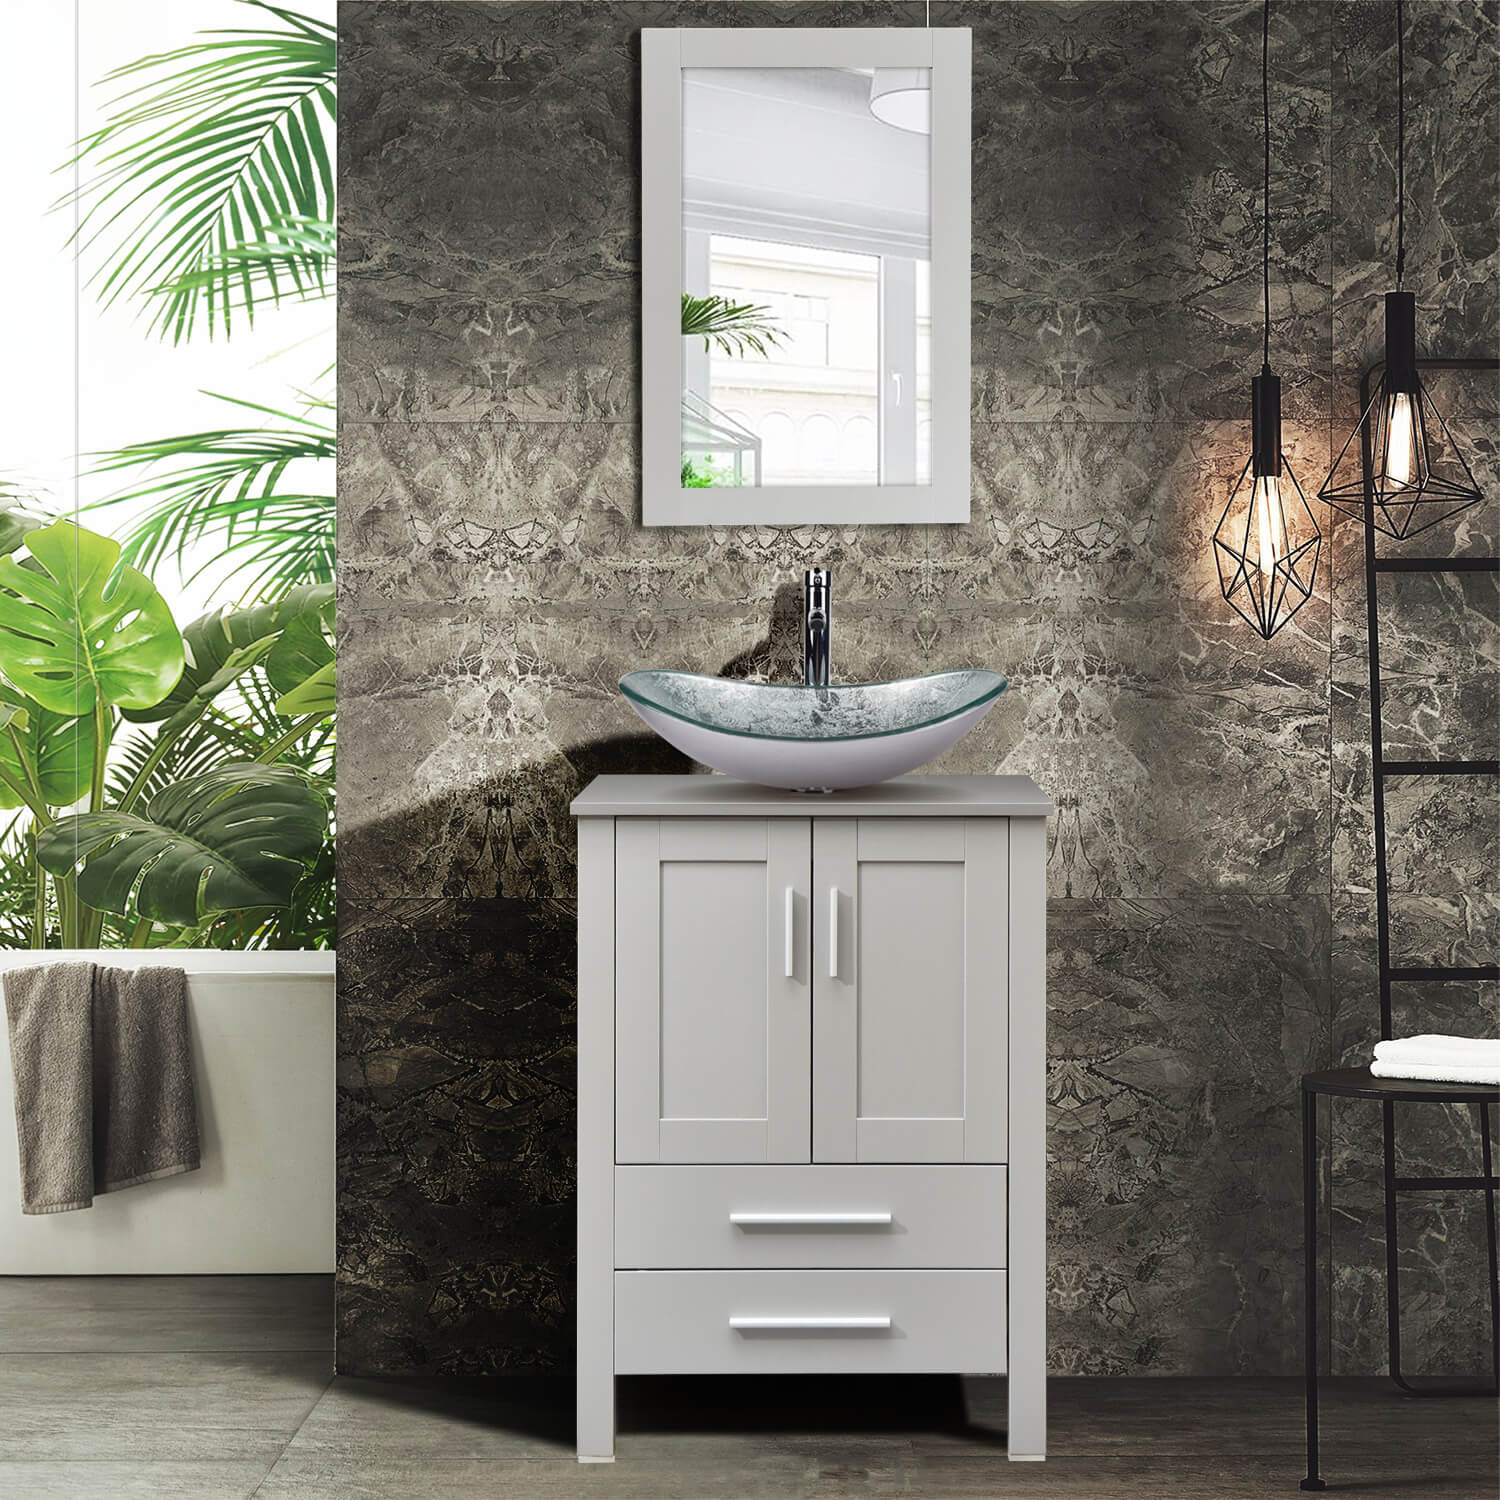 Elecwish gray wood bathroom vanity with silver boat glass sink BG005SI in modern bathroom